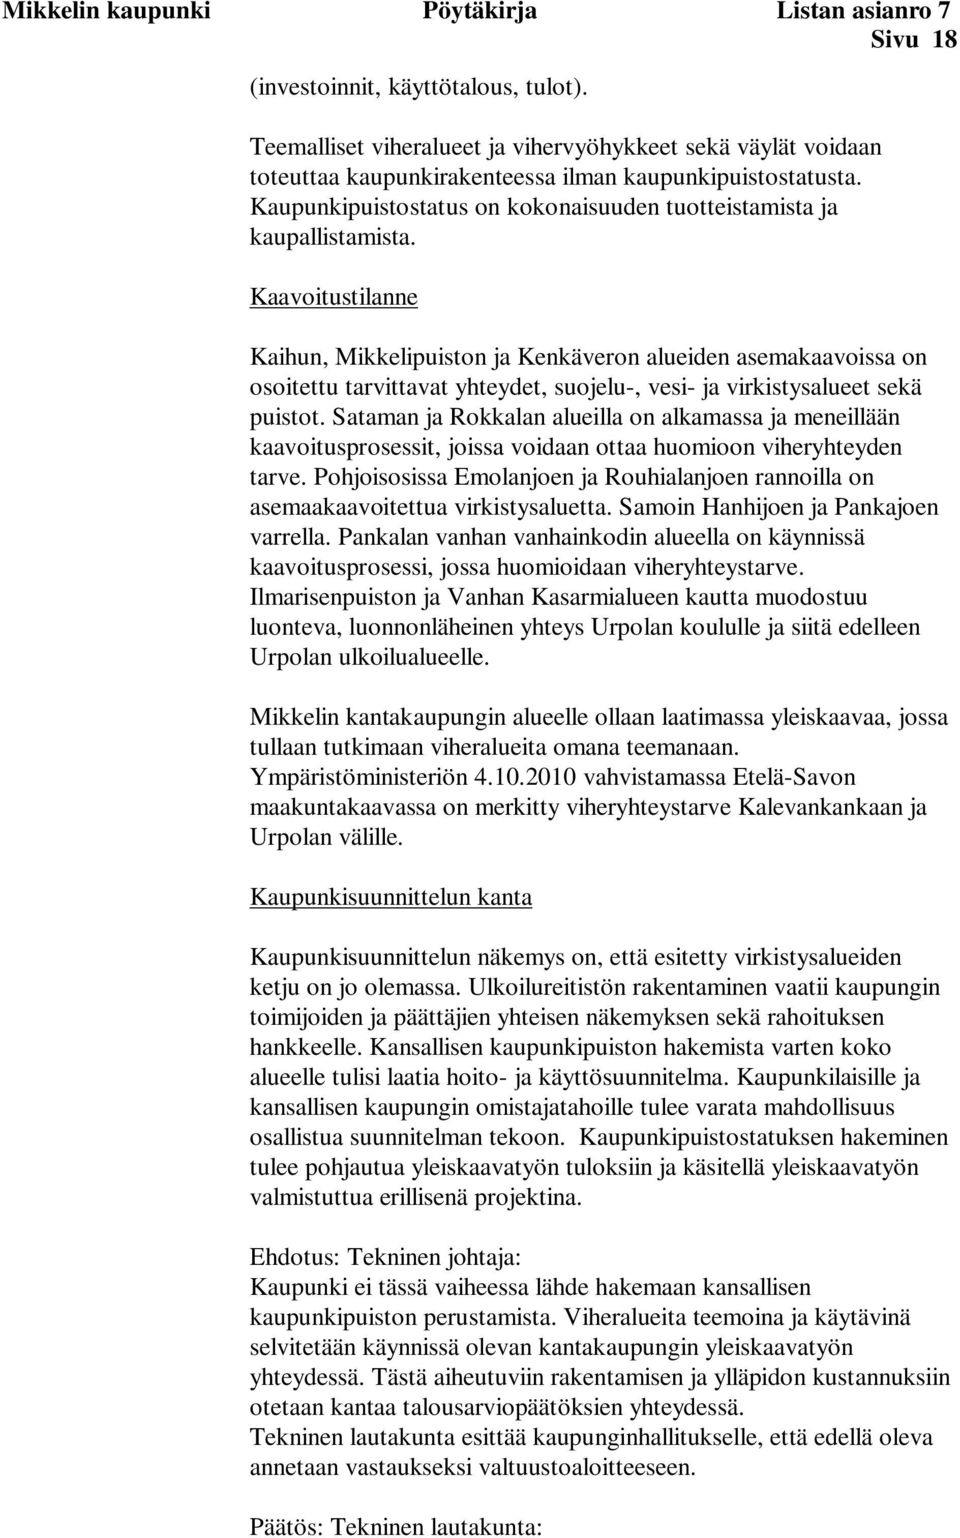 Kaavoitustilanne Kaihun, Mikkelipuiston ja Kenkäveron alueiden asemakaavoissa on osoitettu tarvittavat yhteydet, suojelu-, vesi- ja virkistysalueet sekä puistot.